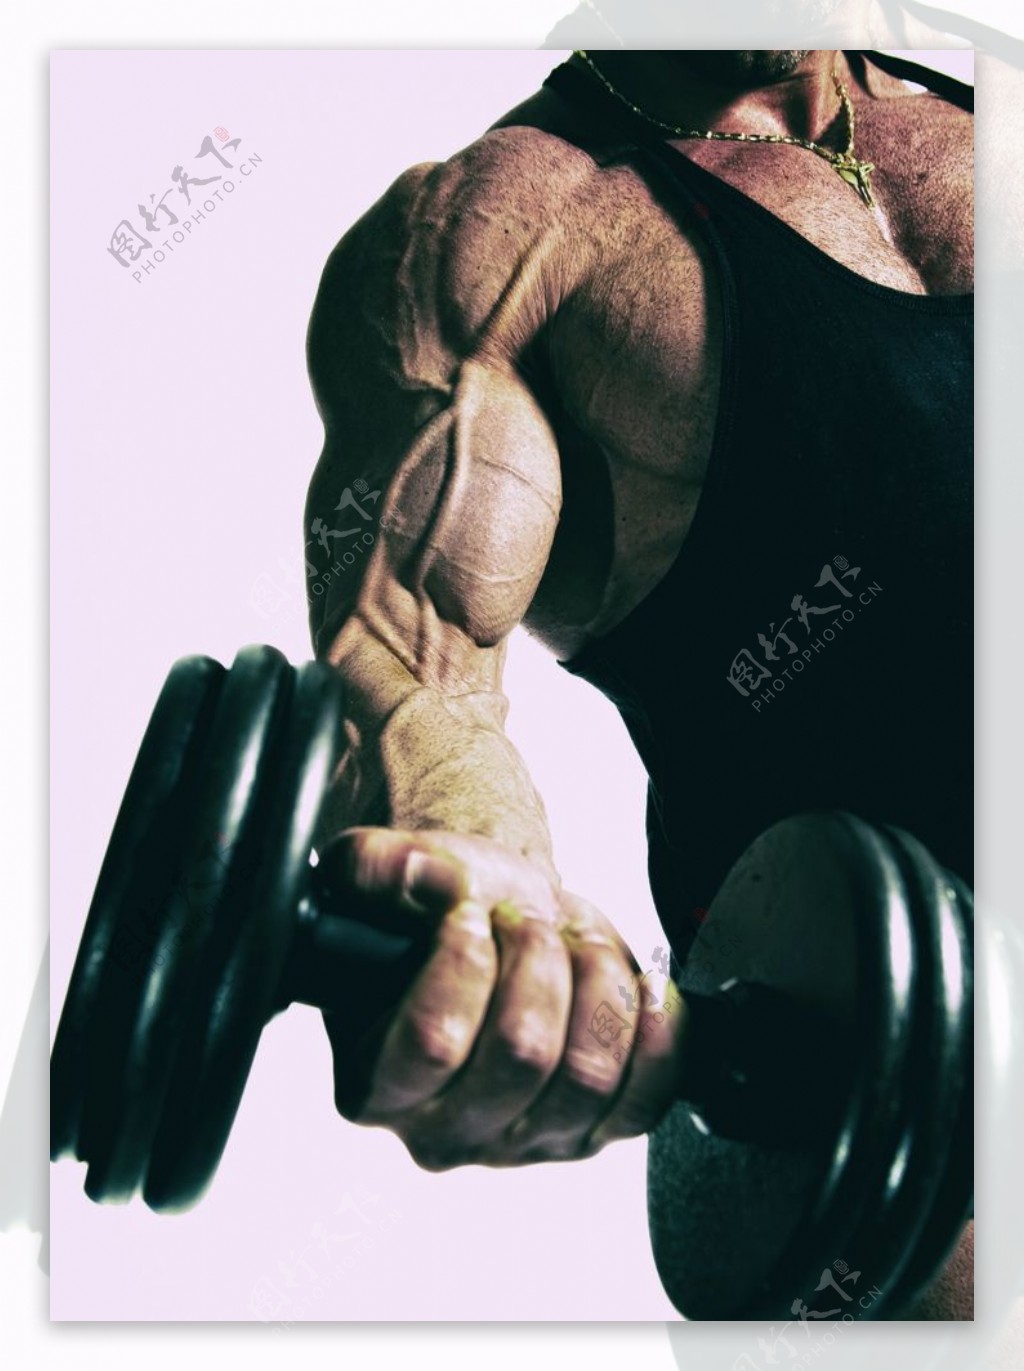 在健身房锻炼肌肉的健美男人图片下载 - 觅知网